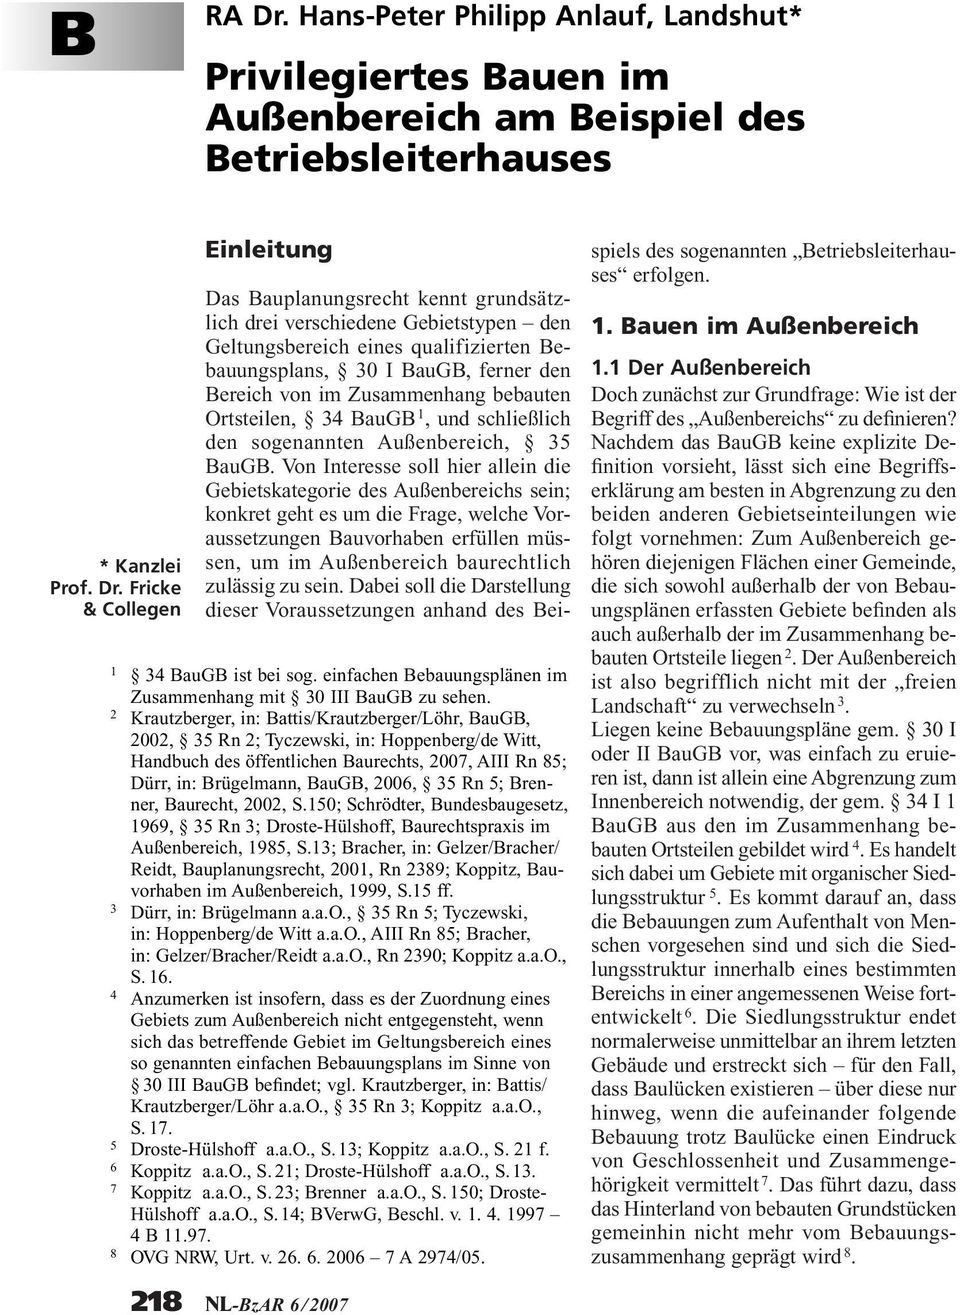 2 Krautzberger, in: Battis/Krautzberger/Löhr, BauGB, 2002, 35 Rn 2; Tyczewski, in: Hoppenberg/de Witt, Handbuch des öffentlichen Baurechts, 2007, AIII Rn 85; Dürr, in: Brügelmann, BauGB, 2006, 35 Rn